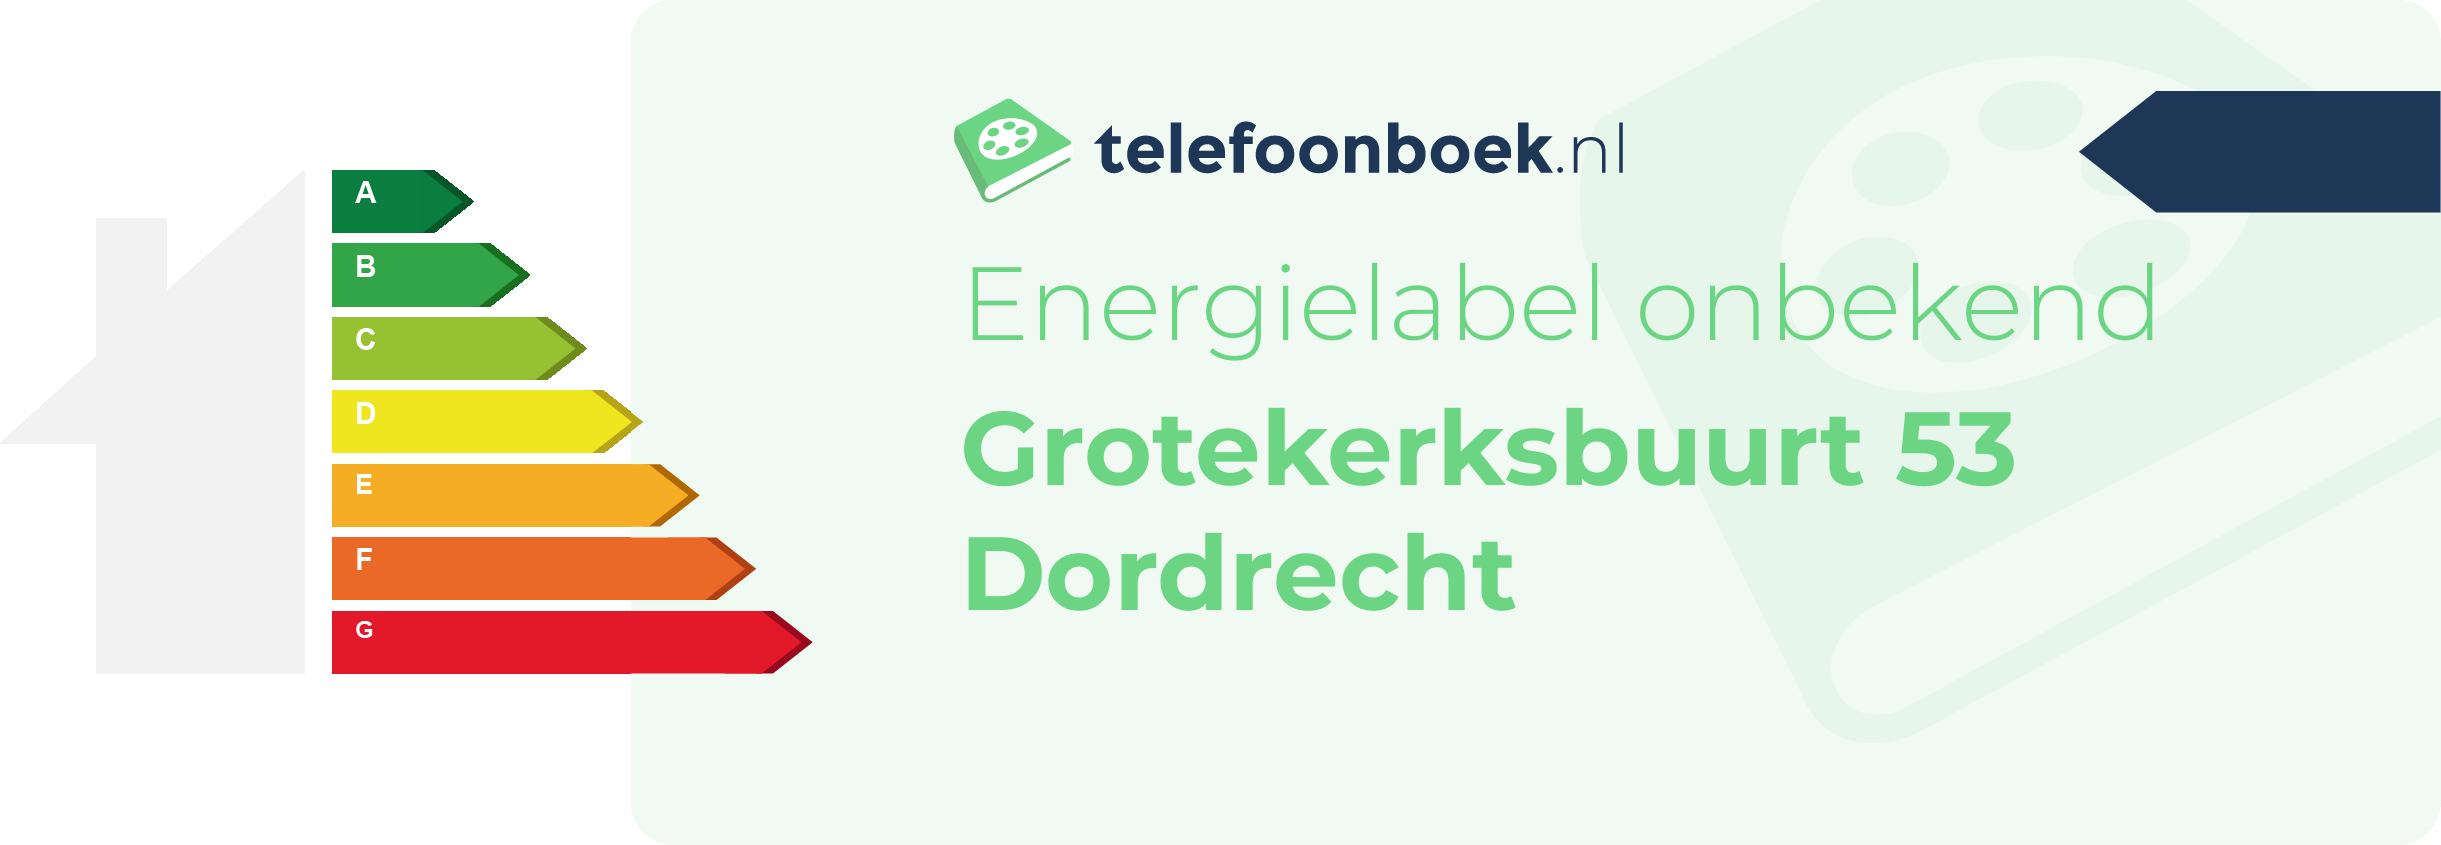 Energielabel Grotekerksbuurt 53 Dordrecht